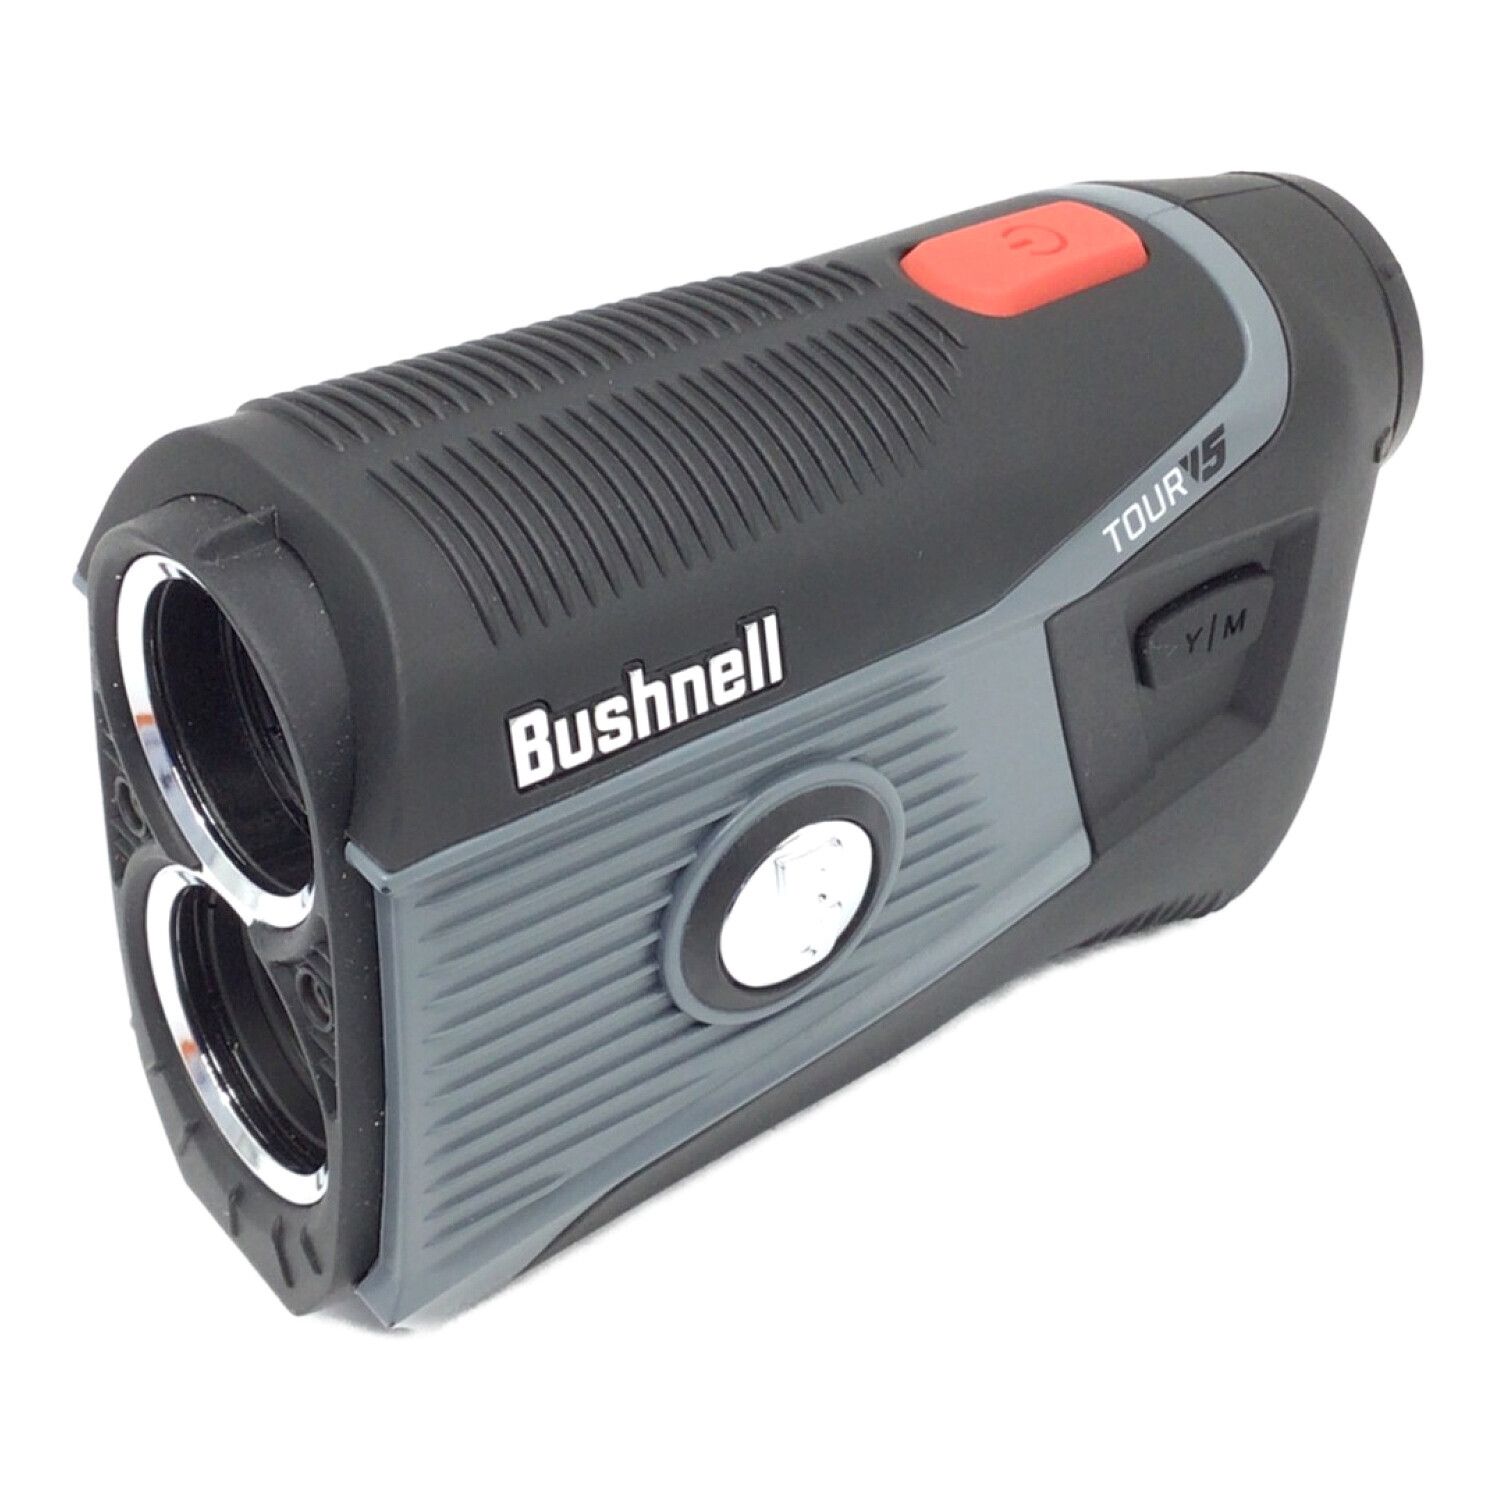 Bushnell (ブッシュネル) ゴルフ距離測定器 元箱・ケース・取扱説明